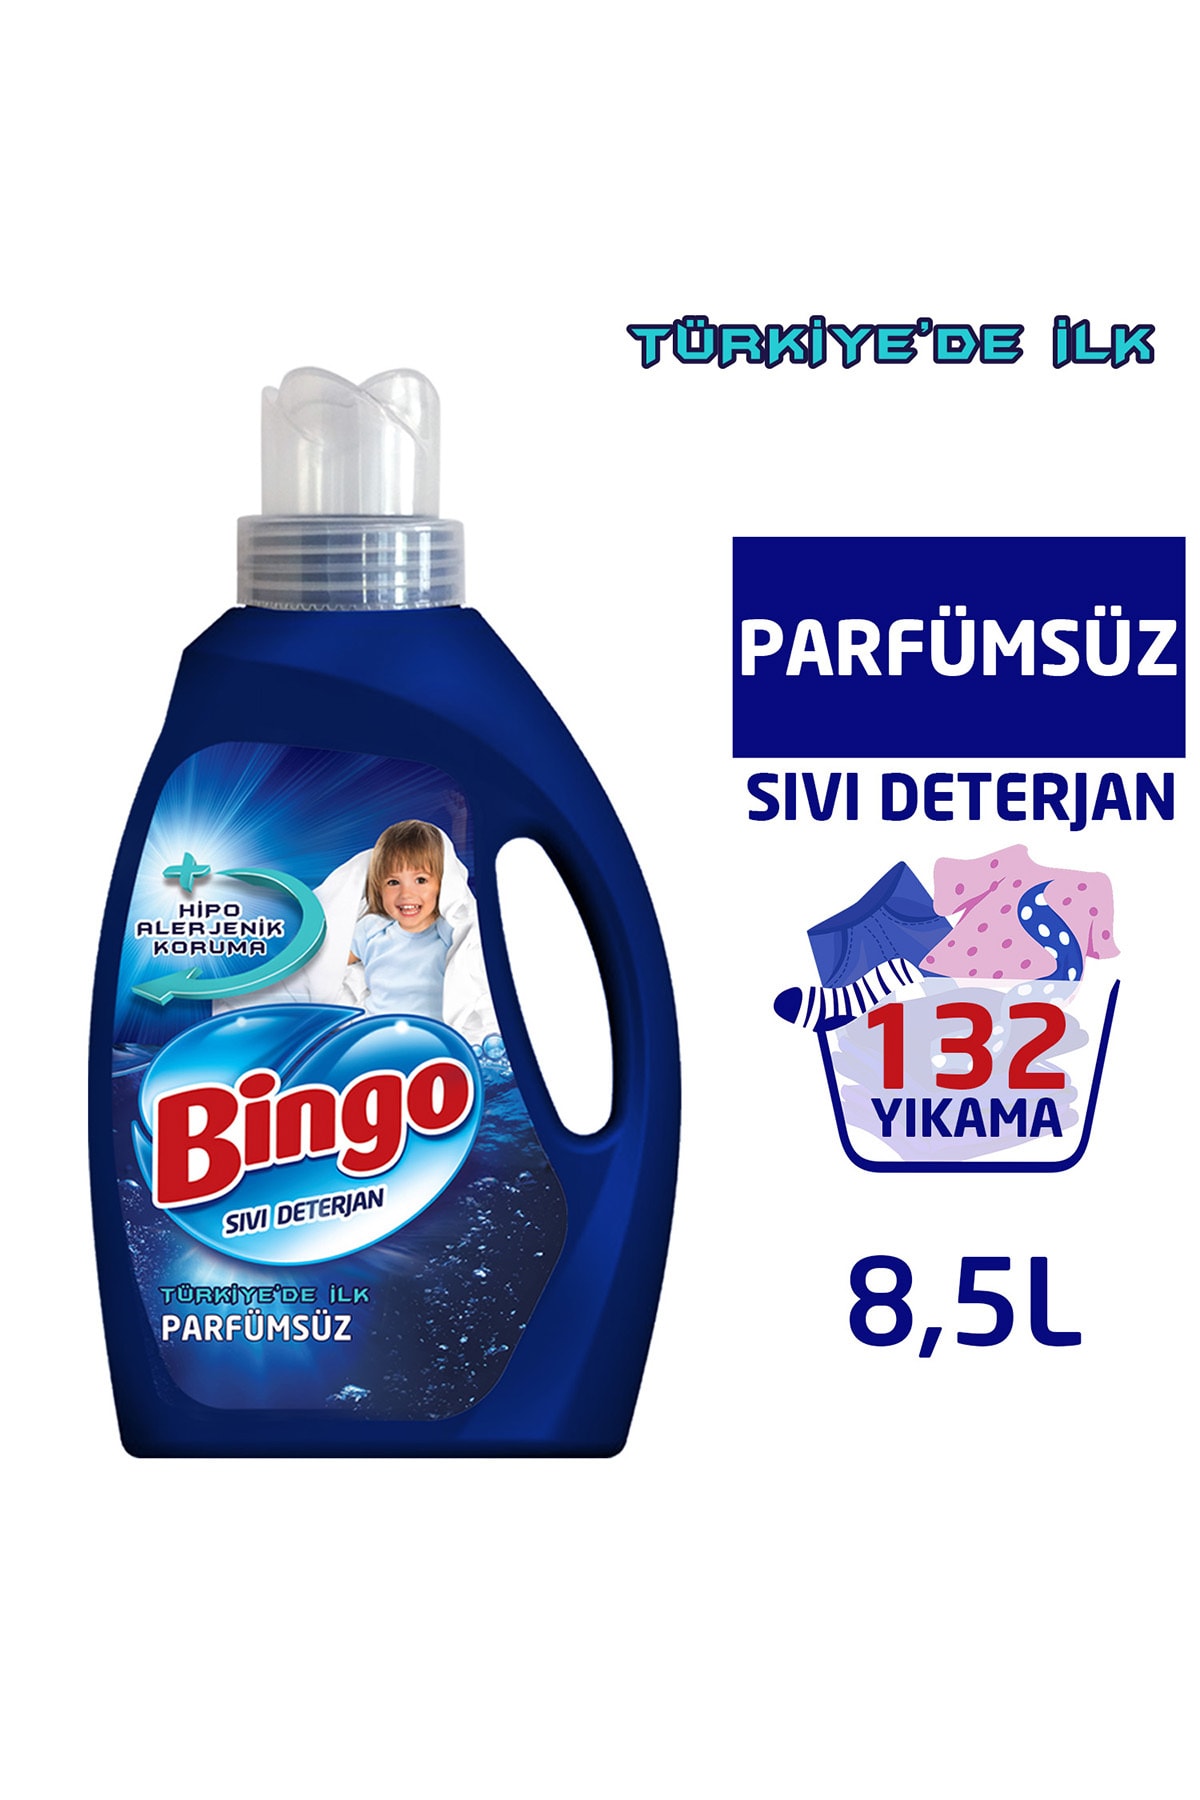 Bingo Parfümsüz Sıvı Performans Çamaşır Deterjanı 2145 ml Ekonomi Paketi 4'lü